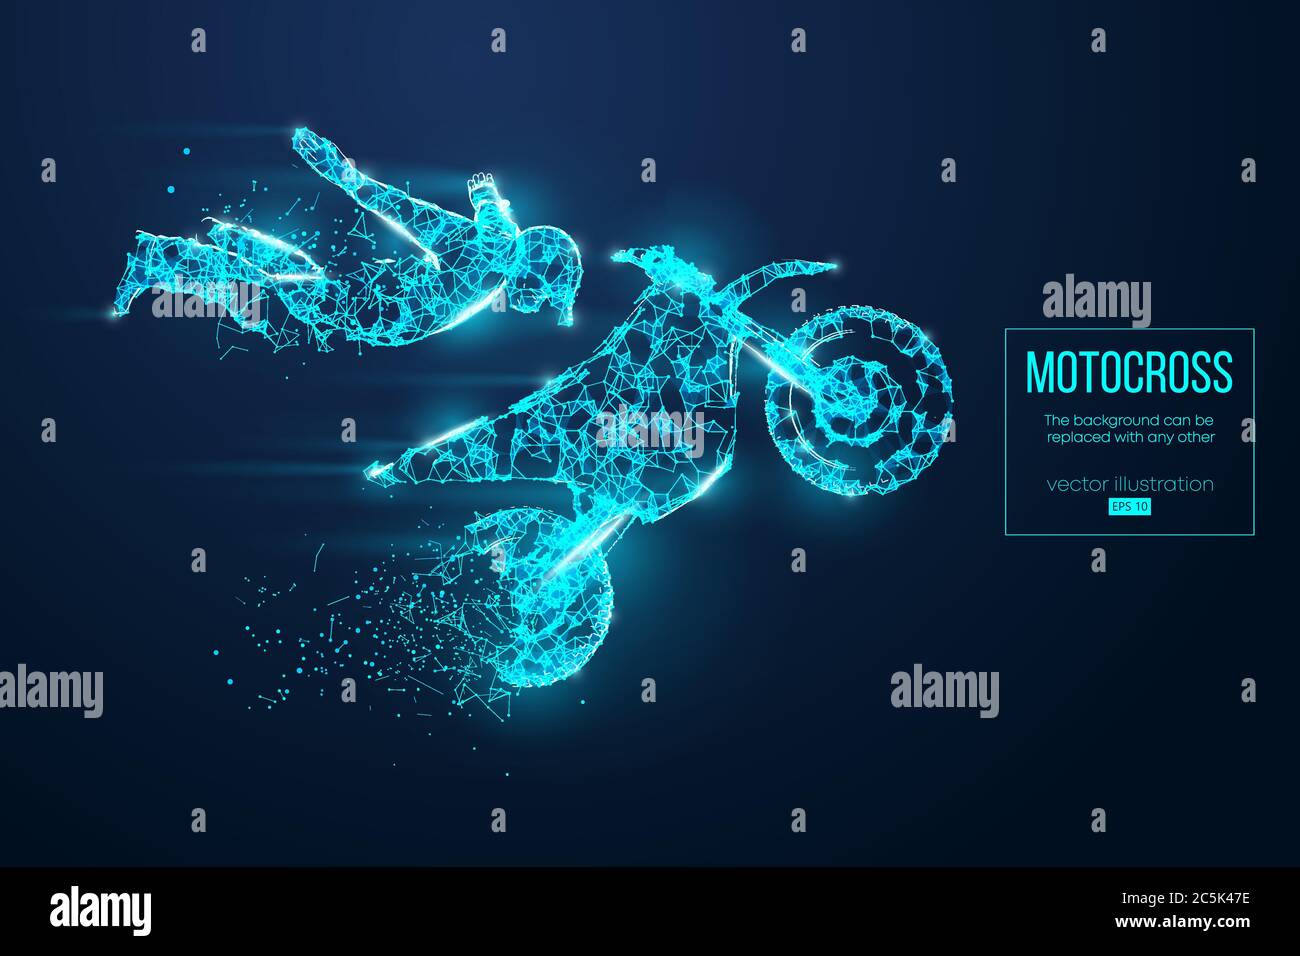 Silhouette abstraite d'un motocross filaire à partir de particules sur fond bleu. Organisation pratique du fichier eps. Illustartion vectorielle. TH Illustration de Vecteur